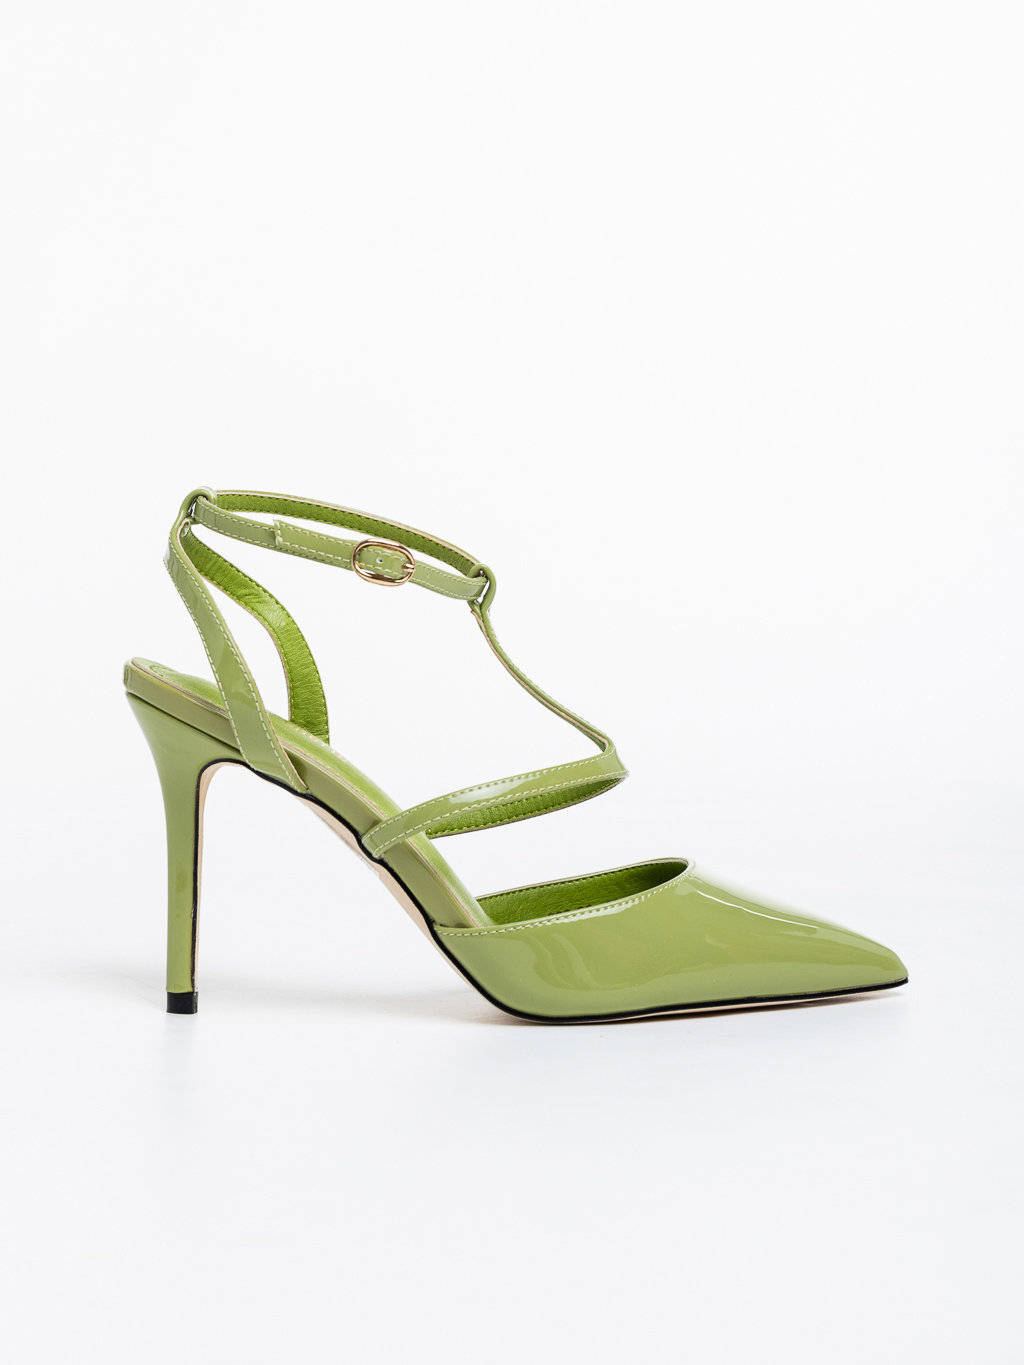 Pantofi dama verzi cu toc din piele ecologica lacuita Laelia, 5 - Kalapod.net